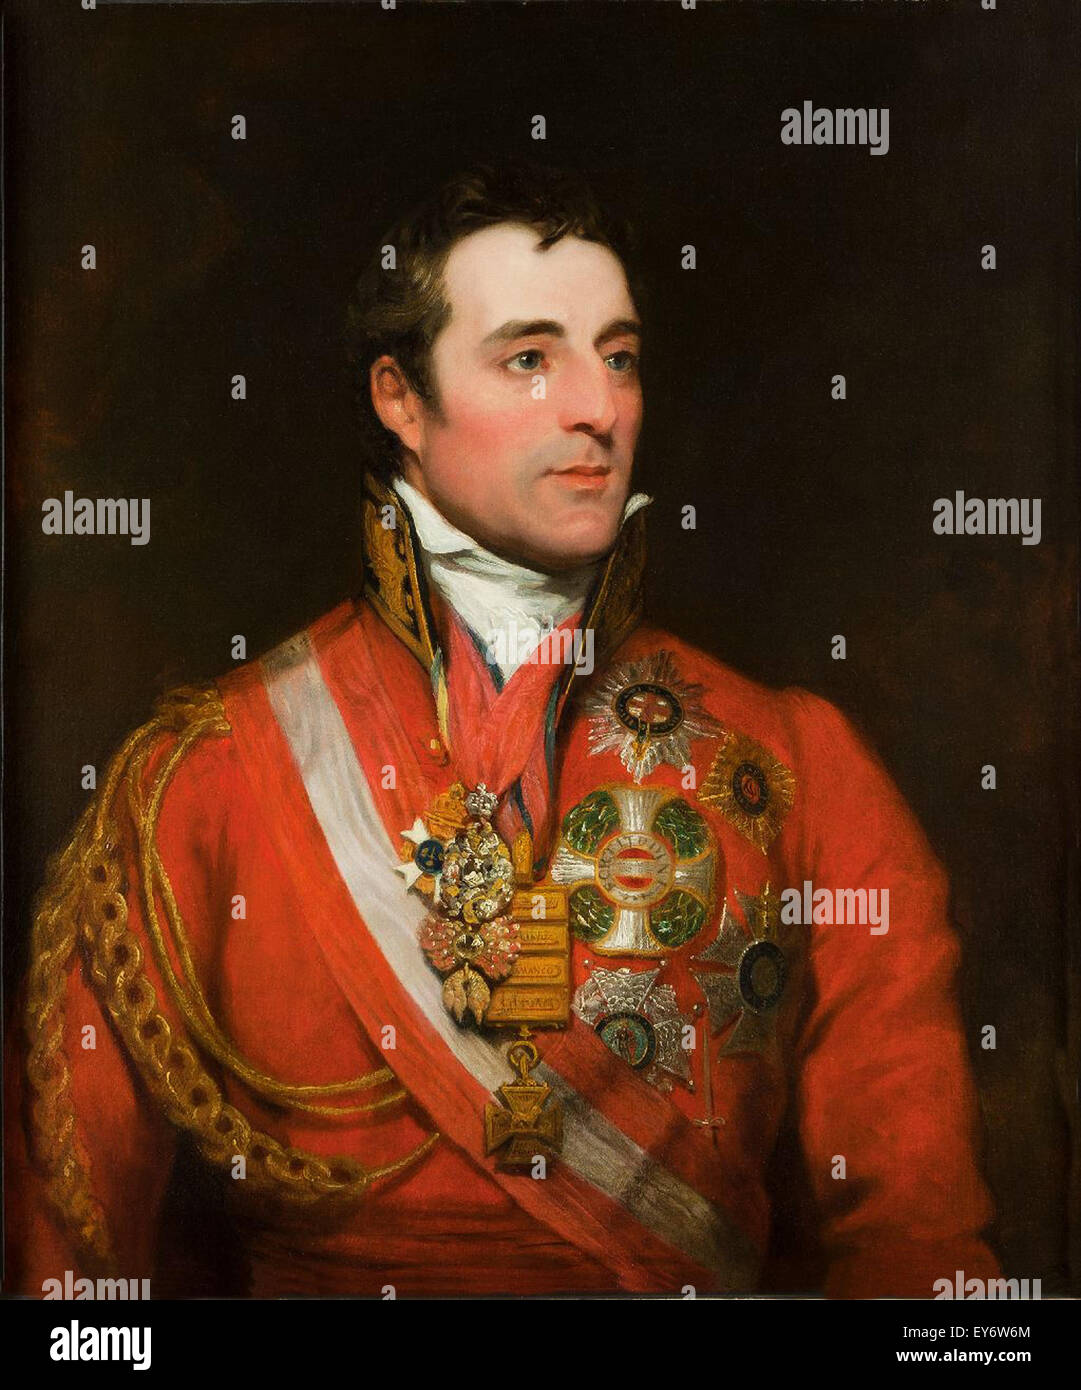 Feldmarschall Arthur Wellesley der 1. Herzog von Wellington tragen Field Marshal Uniform mit Orden vom Goldenen Vlies, star of the Order of the Garter und andere Dekorationen, von Thomas Phillips. Stockfoto